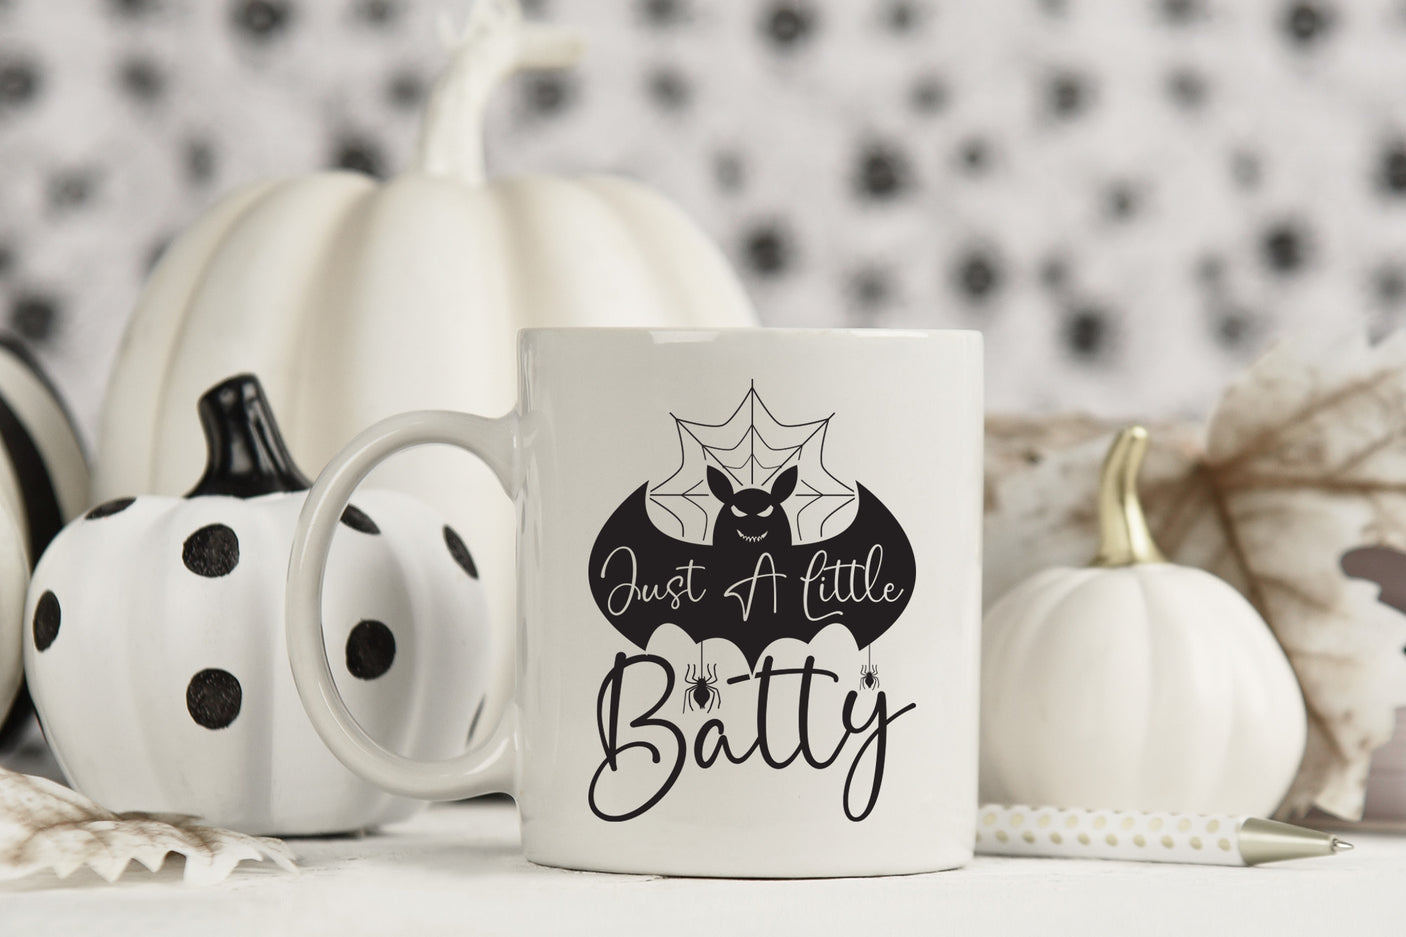 Just a Little Batty SVG - Halloween SVG Design